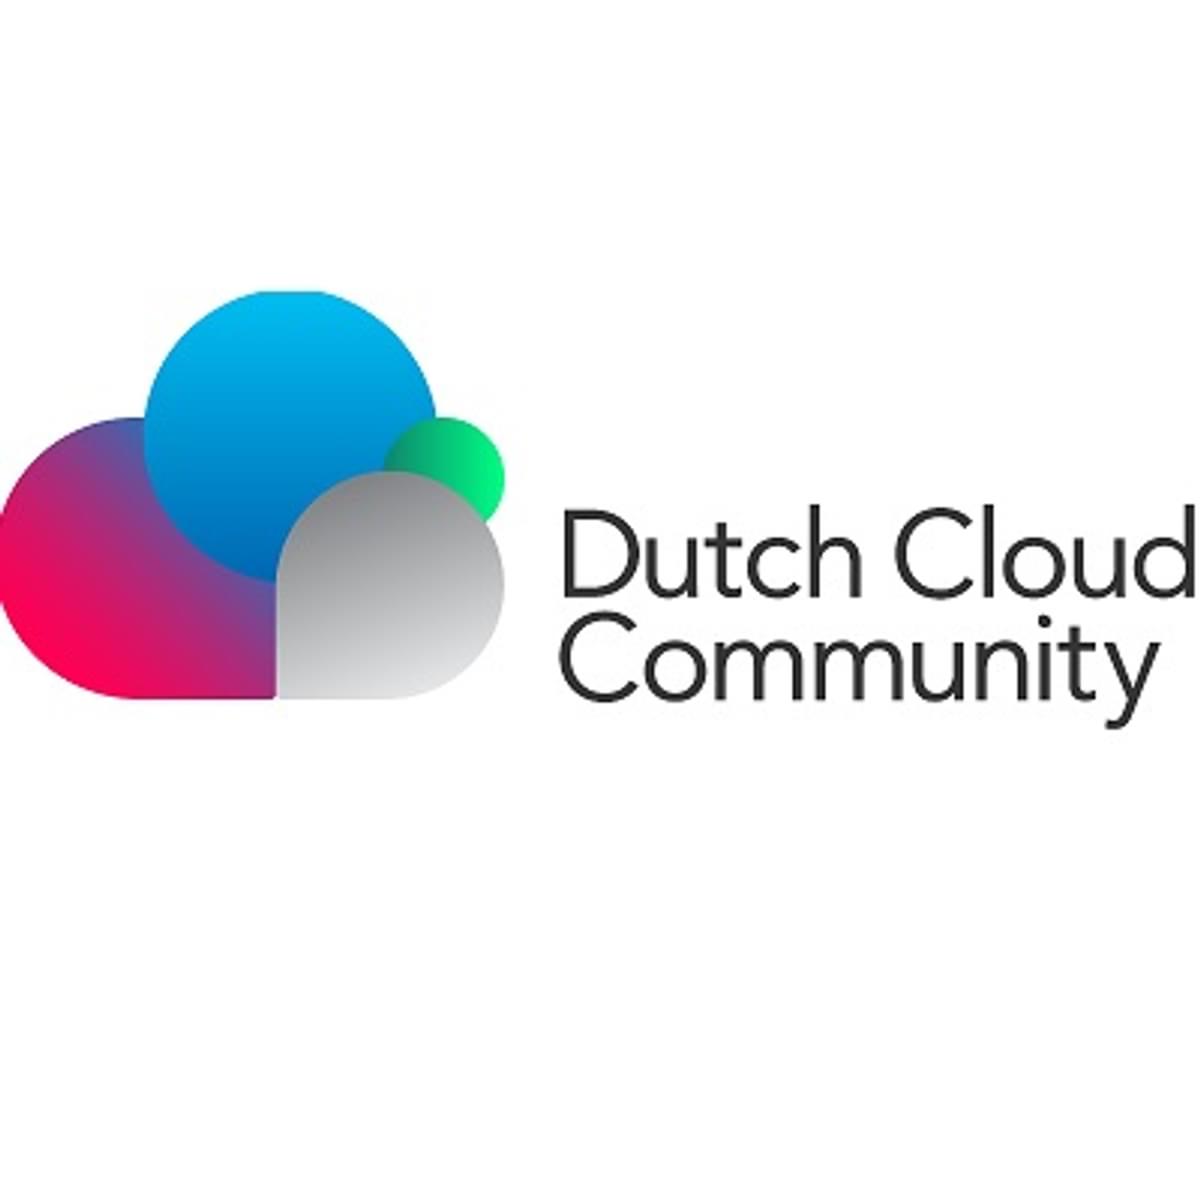 Liber Dock sluit zich als kennispartner aan bij Dutch Cloud Community image